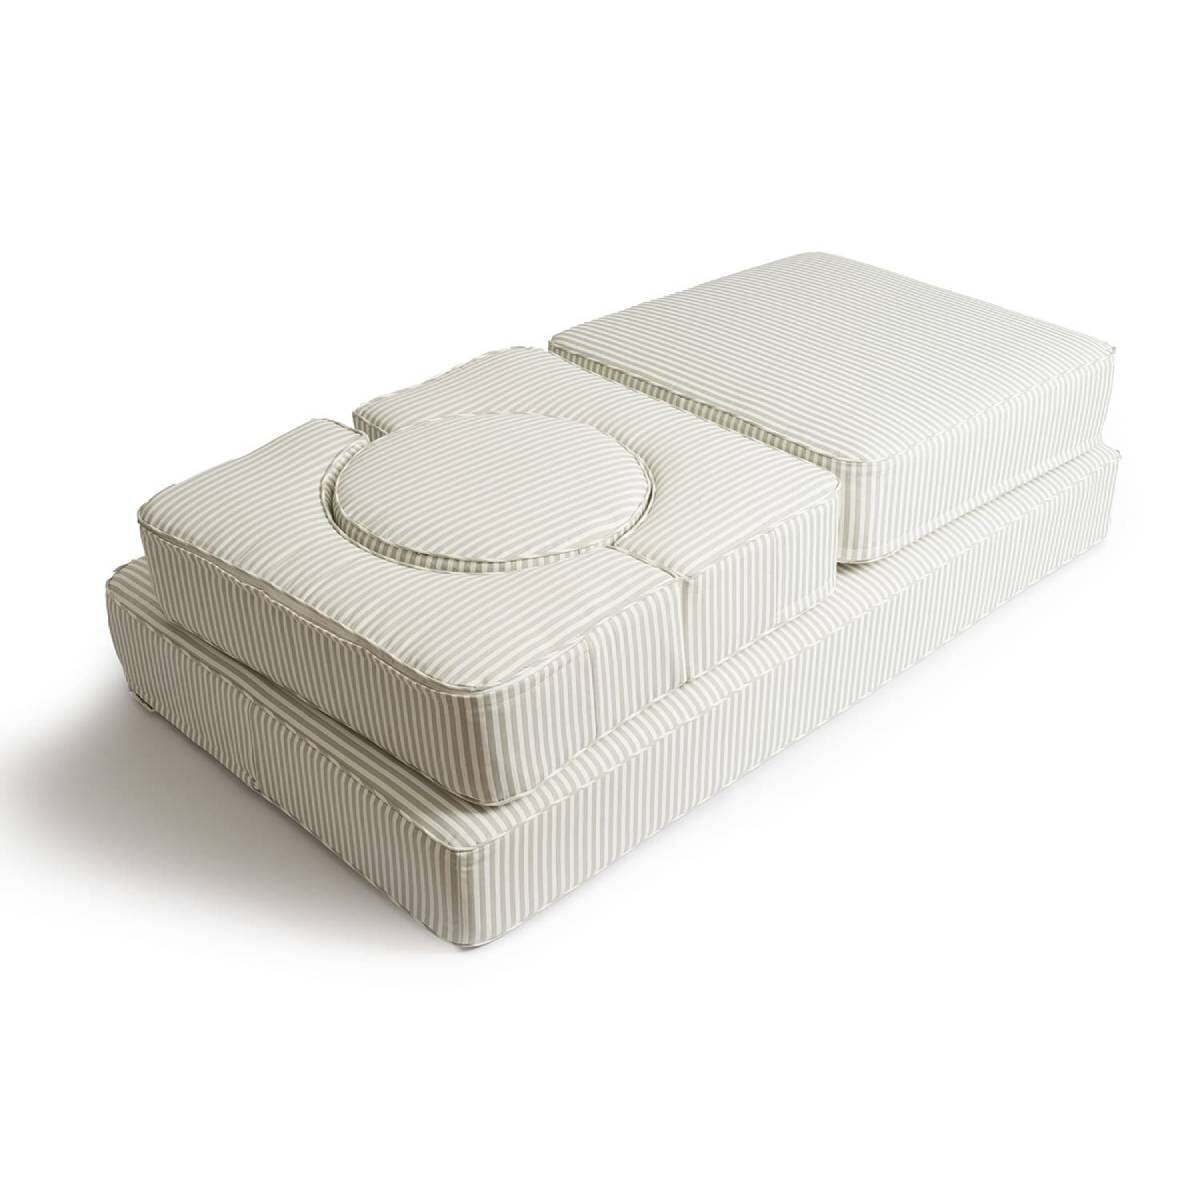 Studio image of sage modular pillow stack